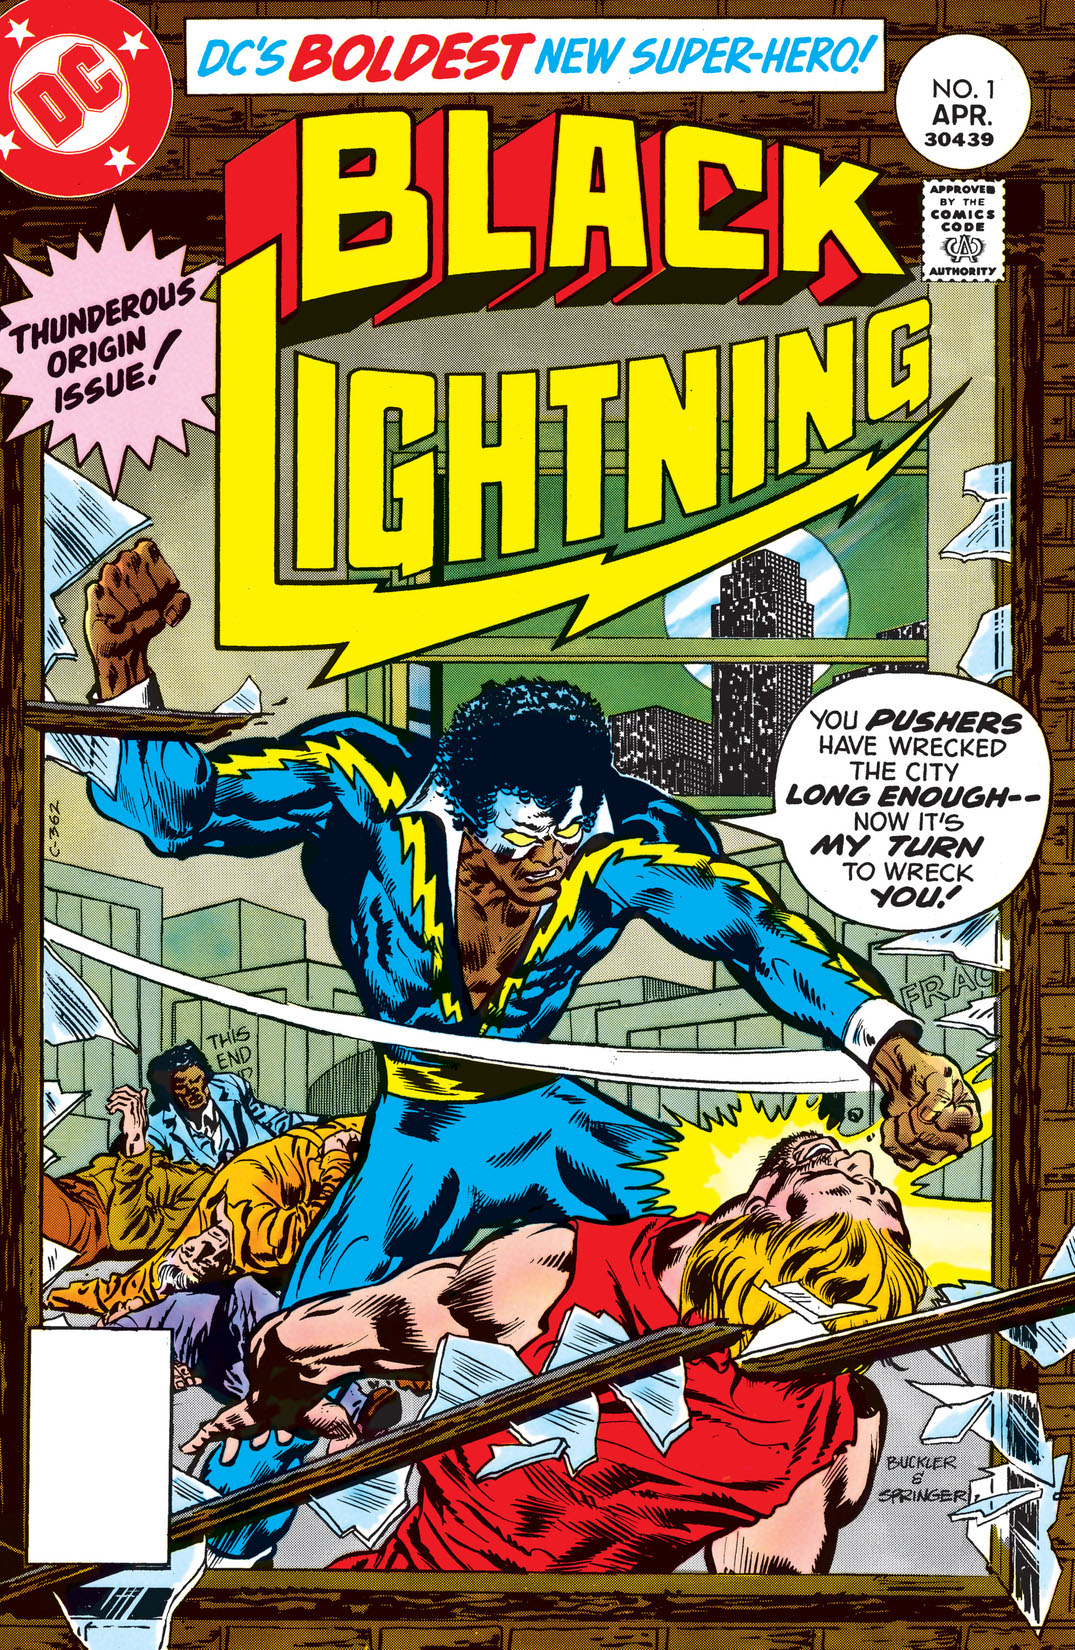 Black Lightning (1977-) #1 preview images